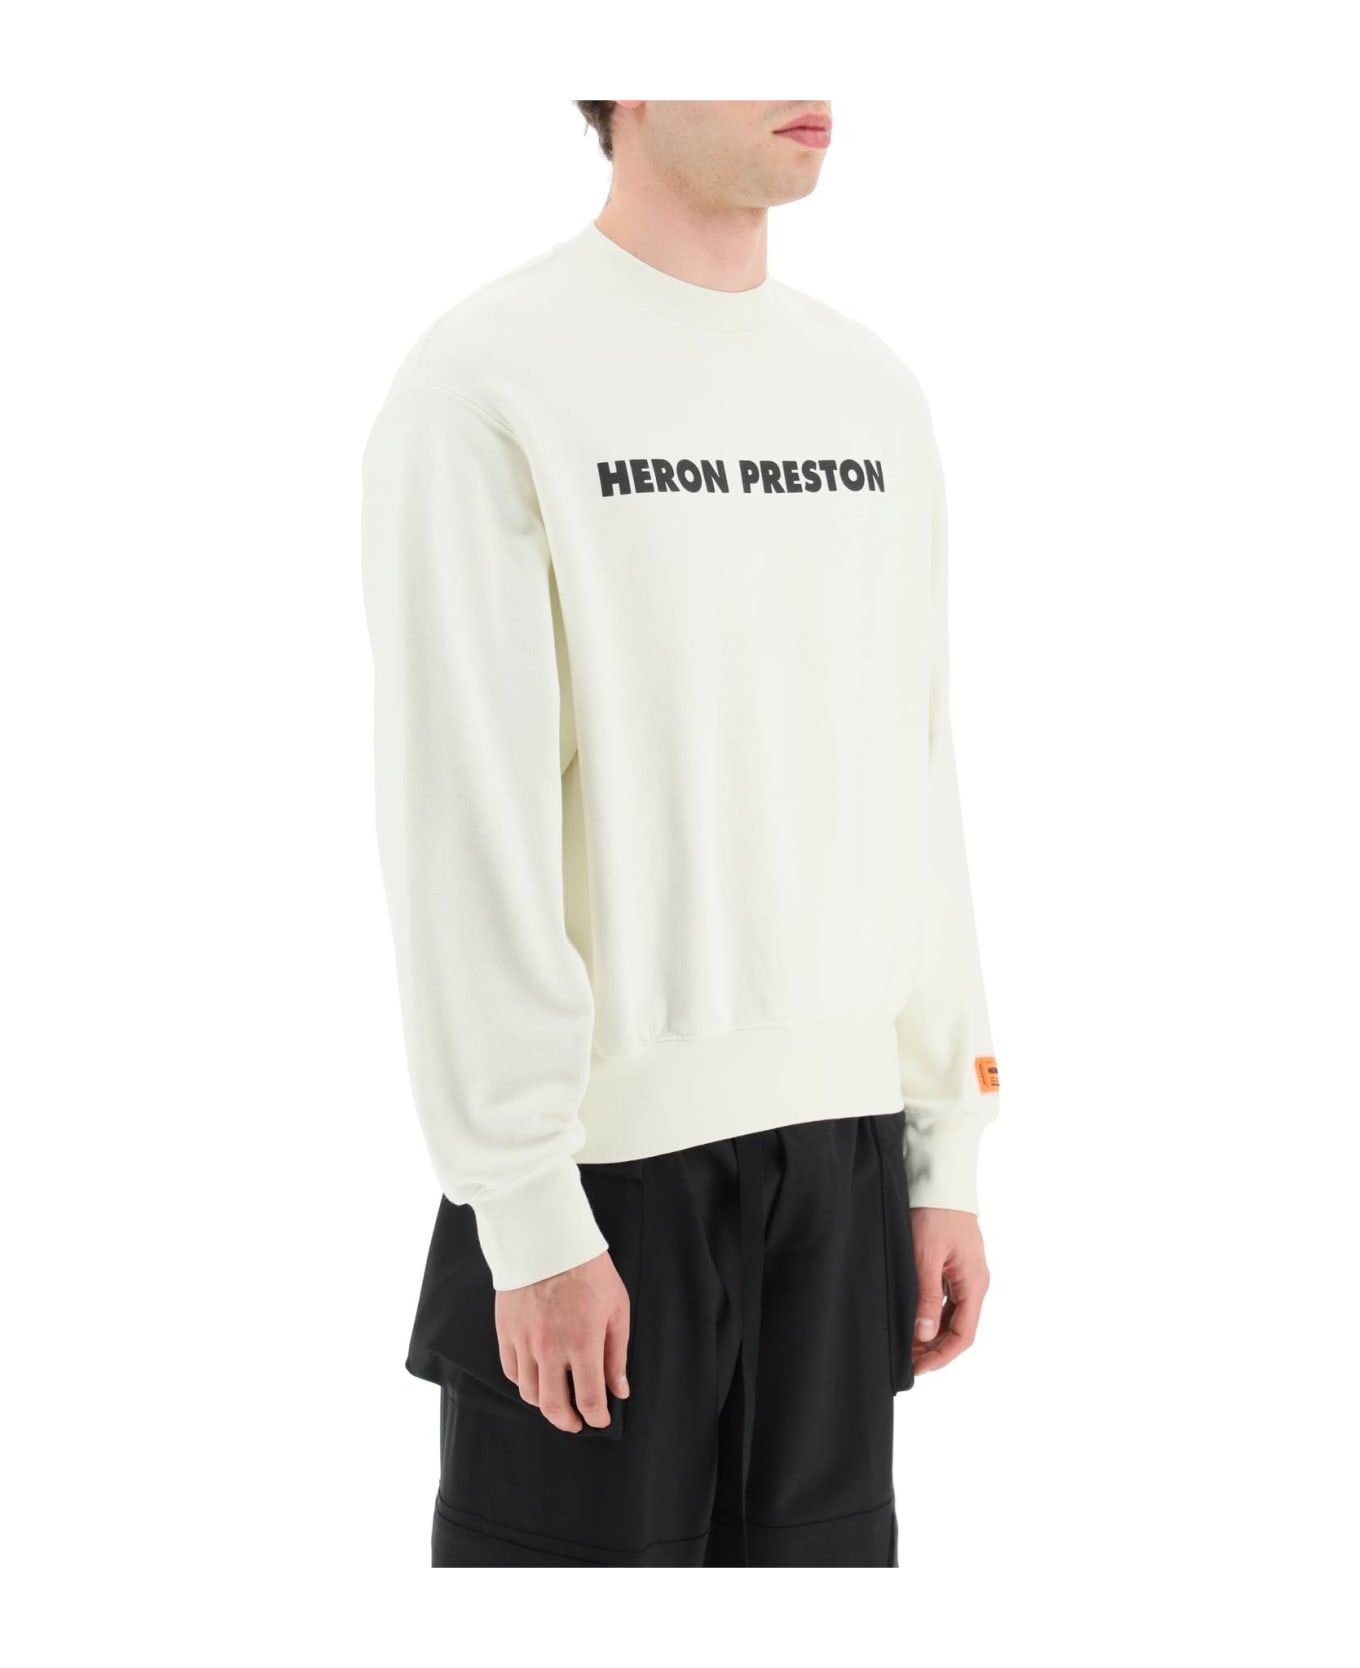 HERON PRESTON Crewneck Sweatshirt - White/black